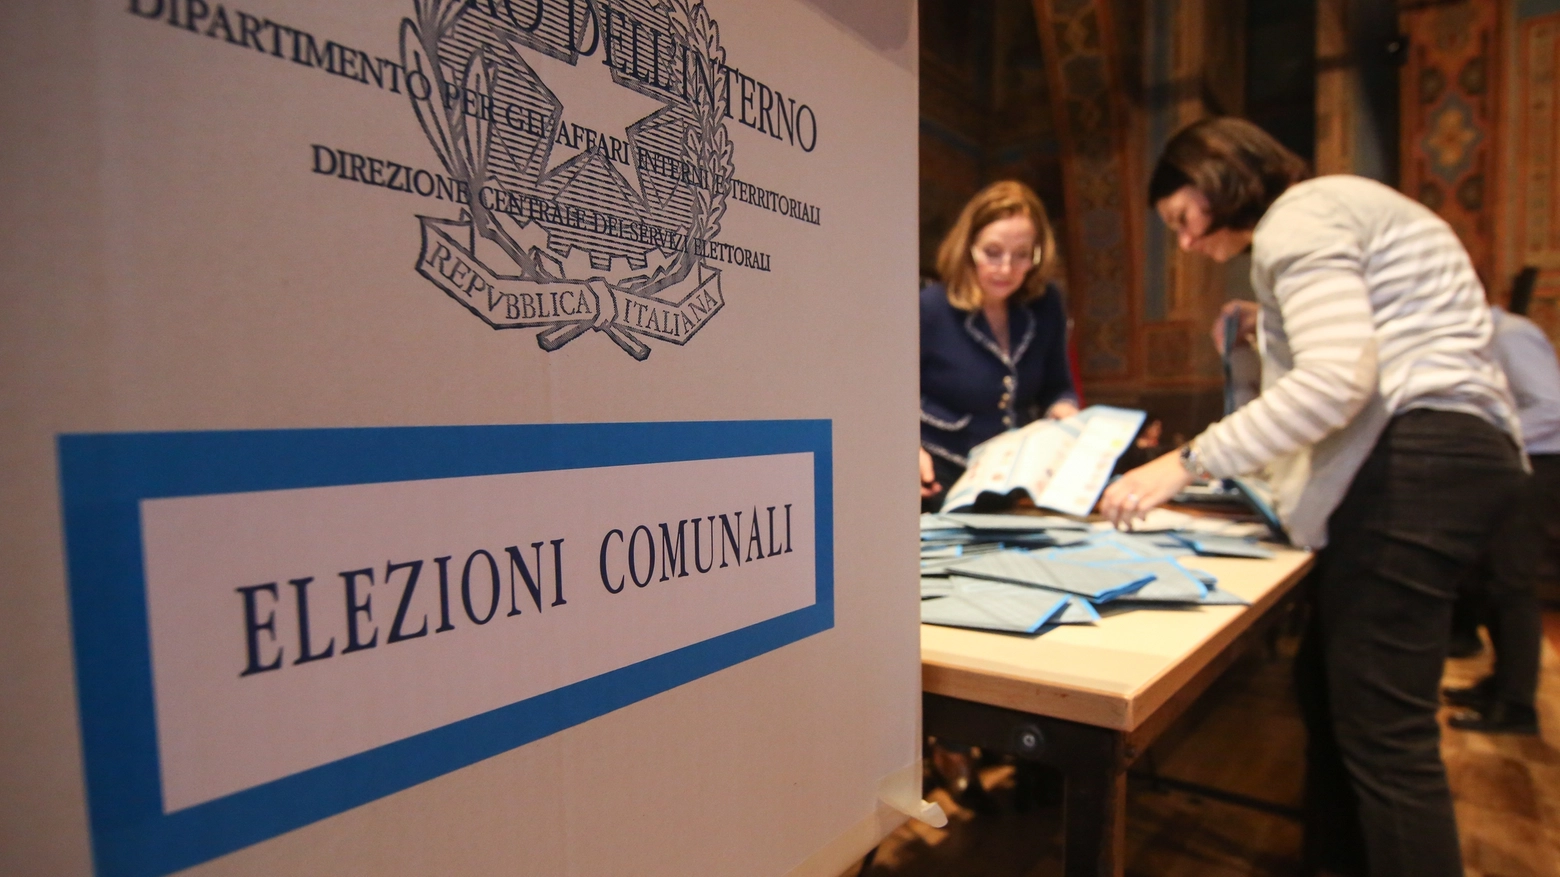 Elezioni comunali 2019 (Foto Crocchioni)